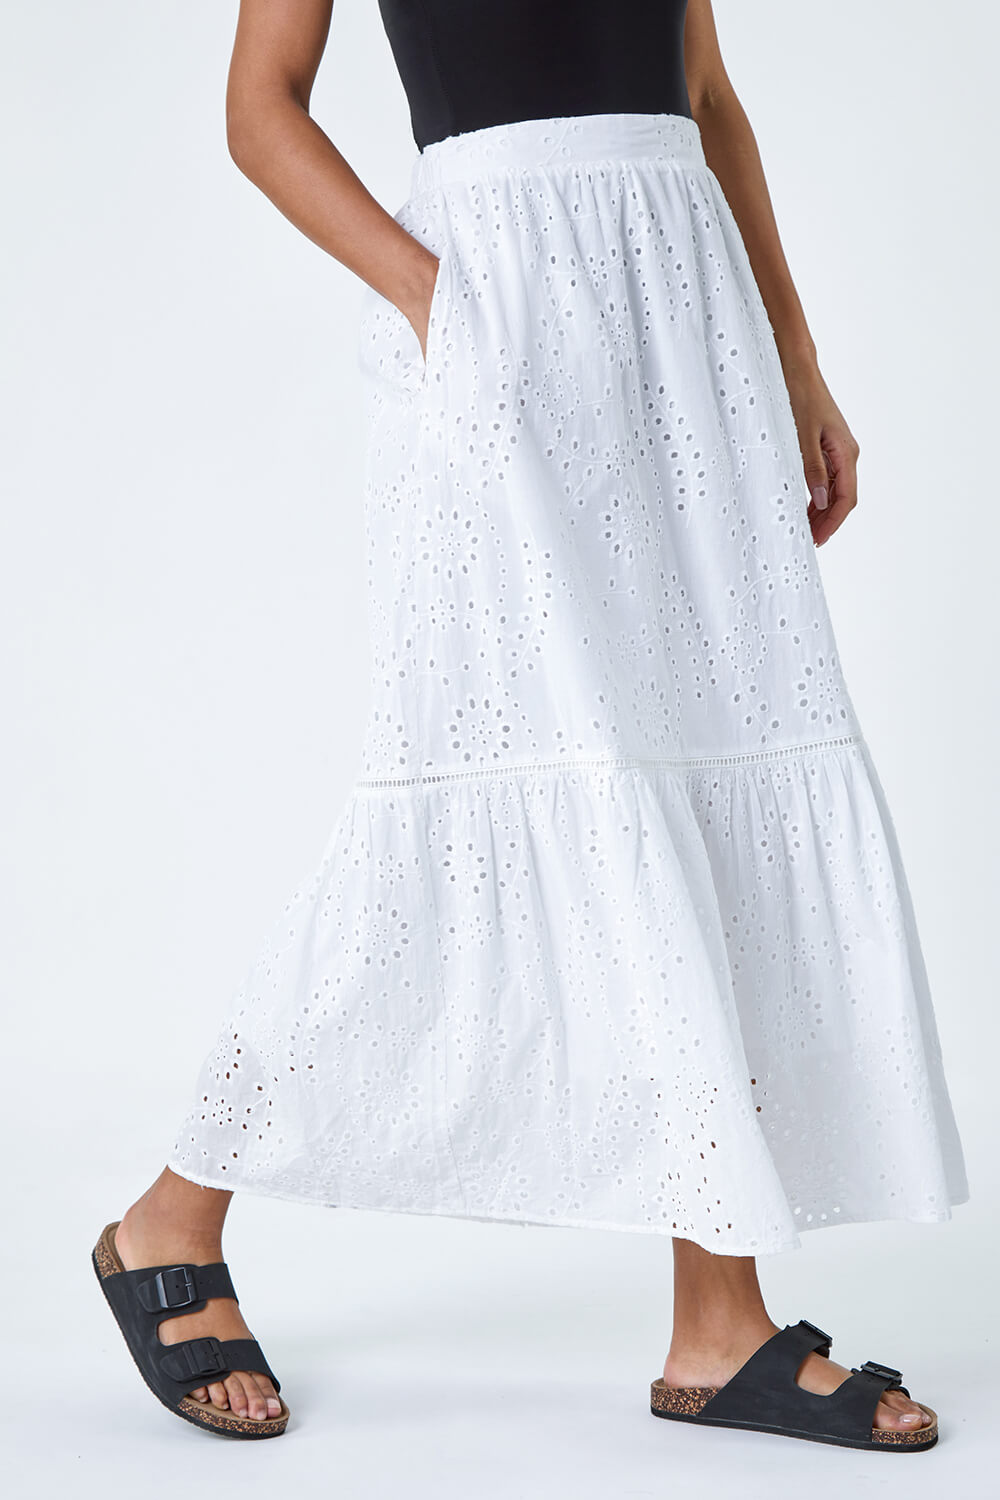 White Cotton Broderie Pocket Midi Skirt, Image 4 of 5